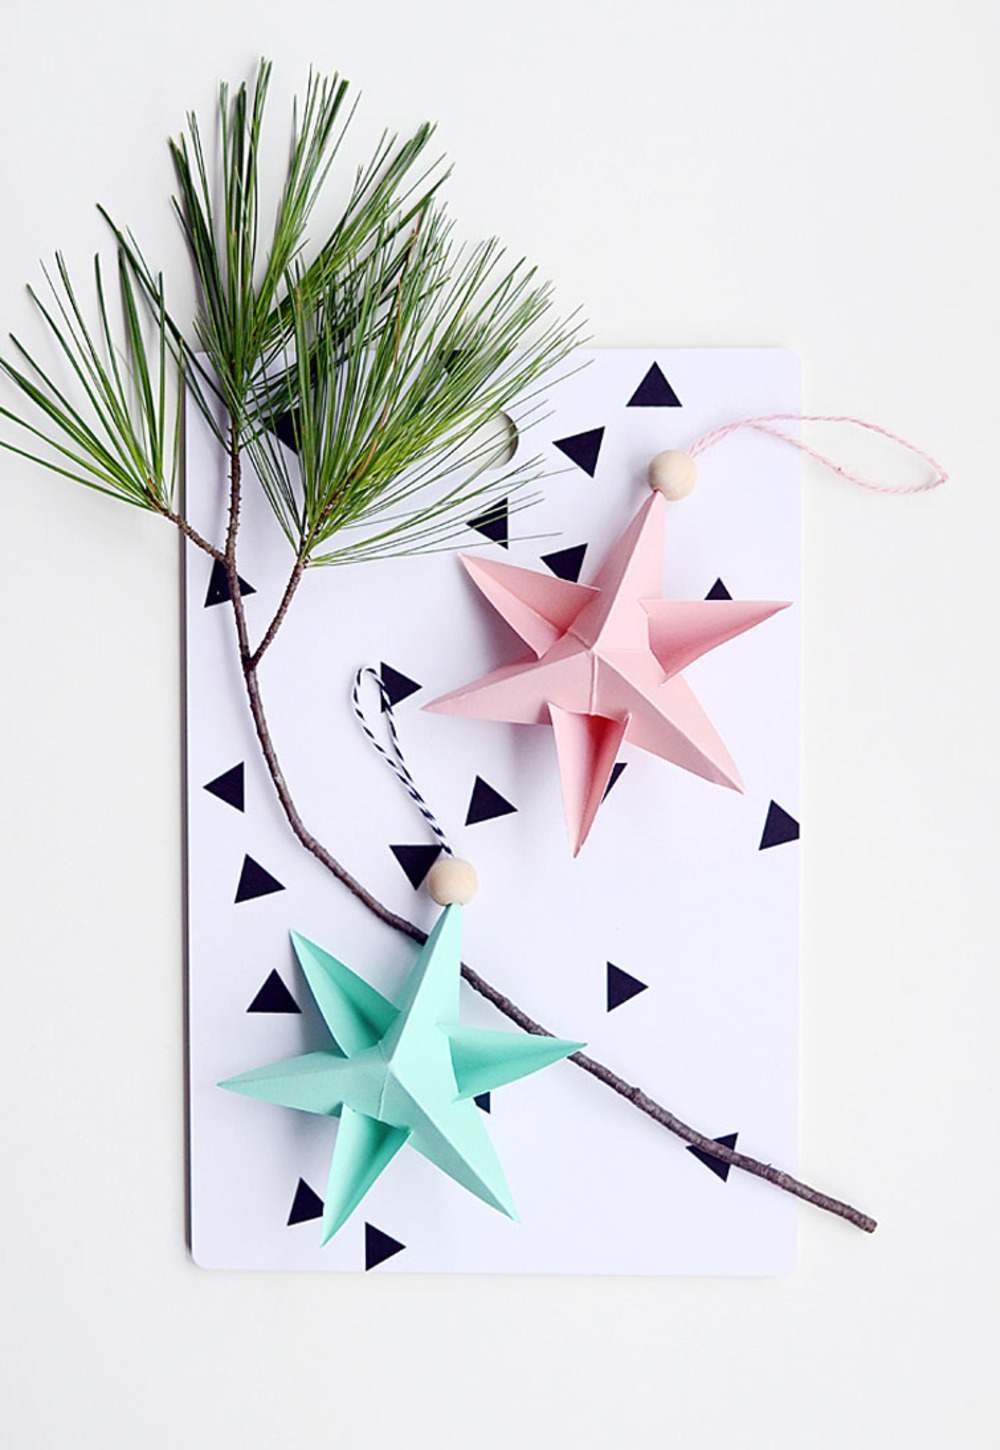 Ramo de abeto com duas estrelas de papel em rosa e verde menta como decoração de Natal